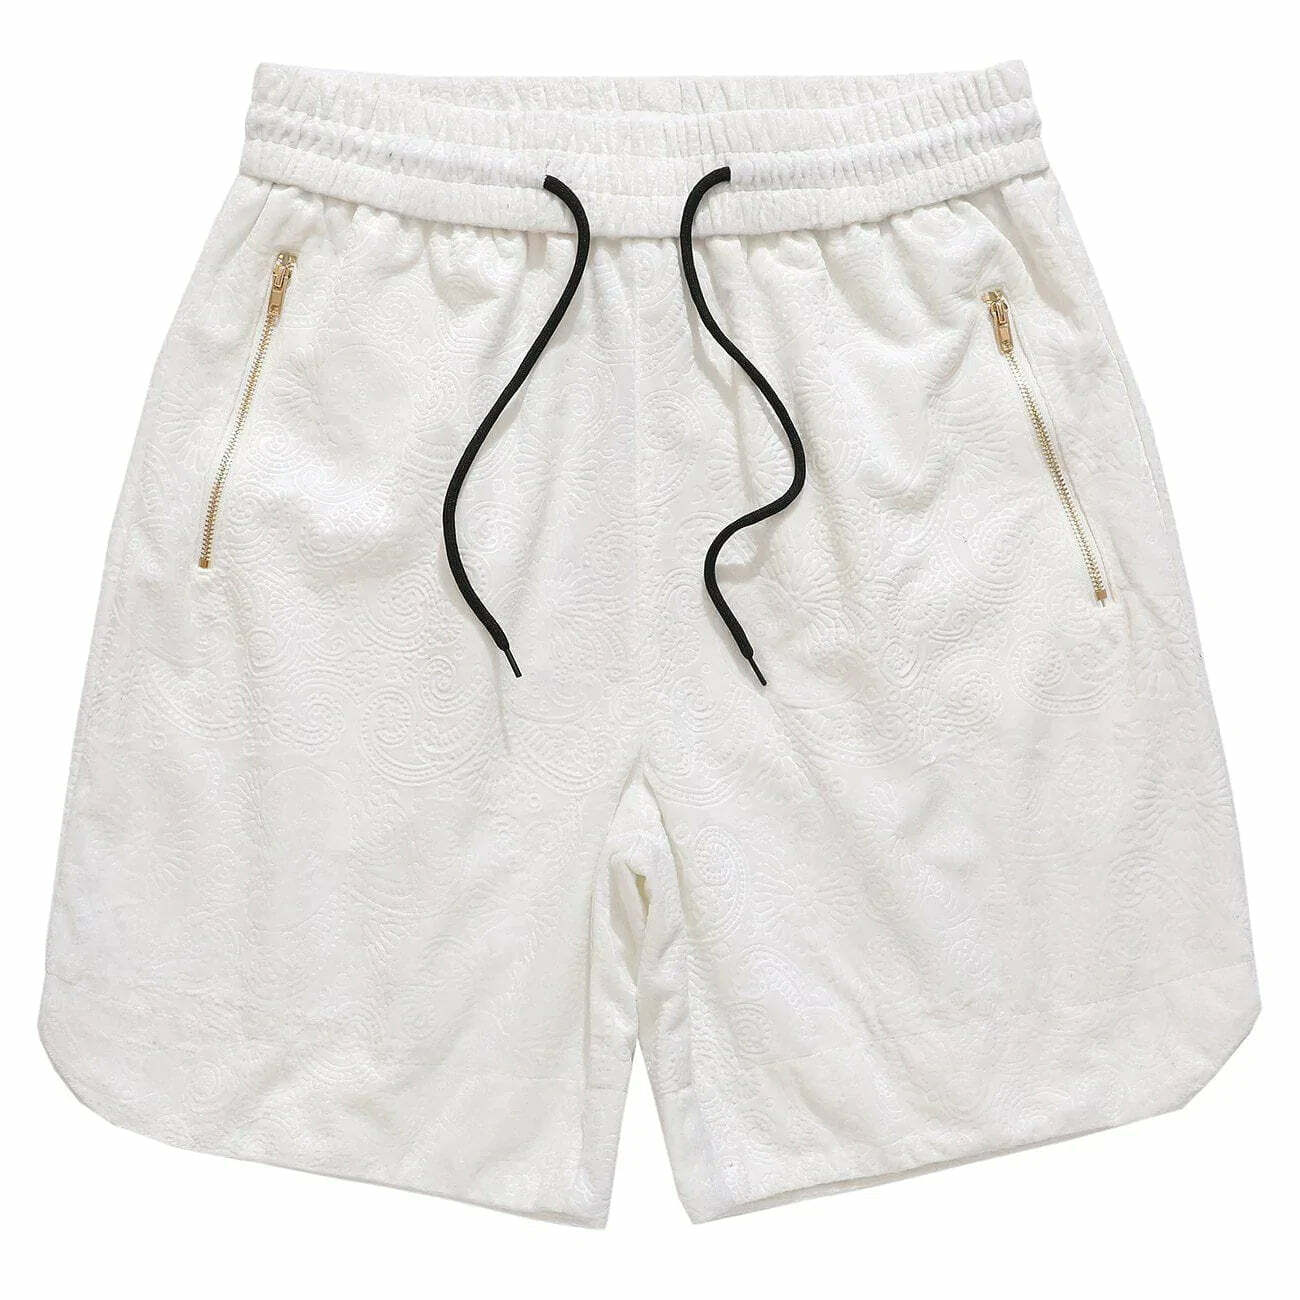 zipper detail cargo shorts edgy y2k streetwear 5350